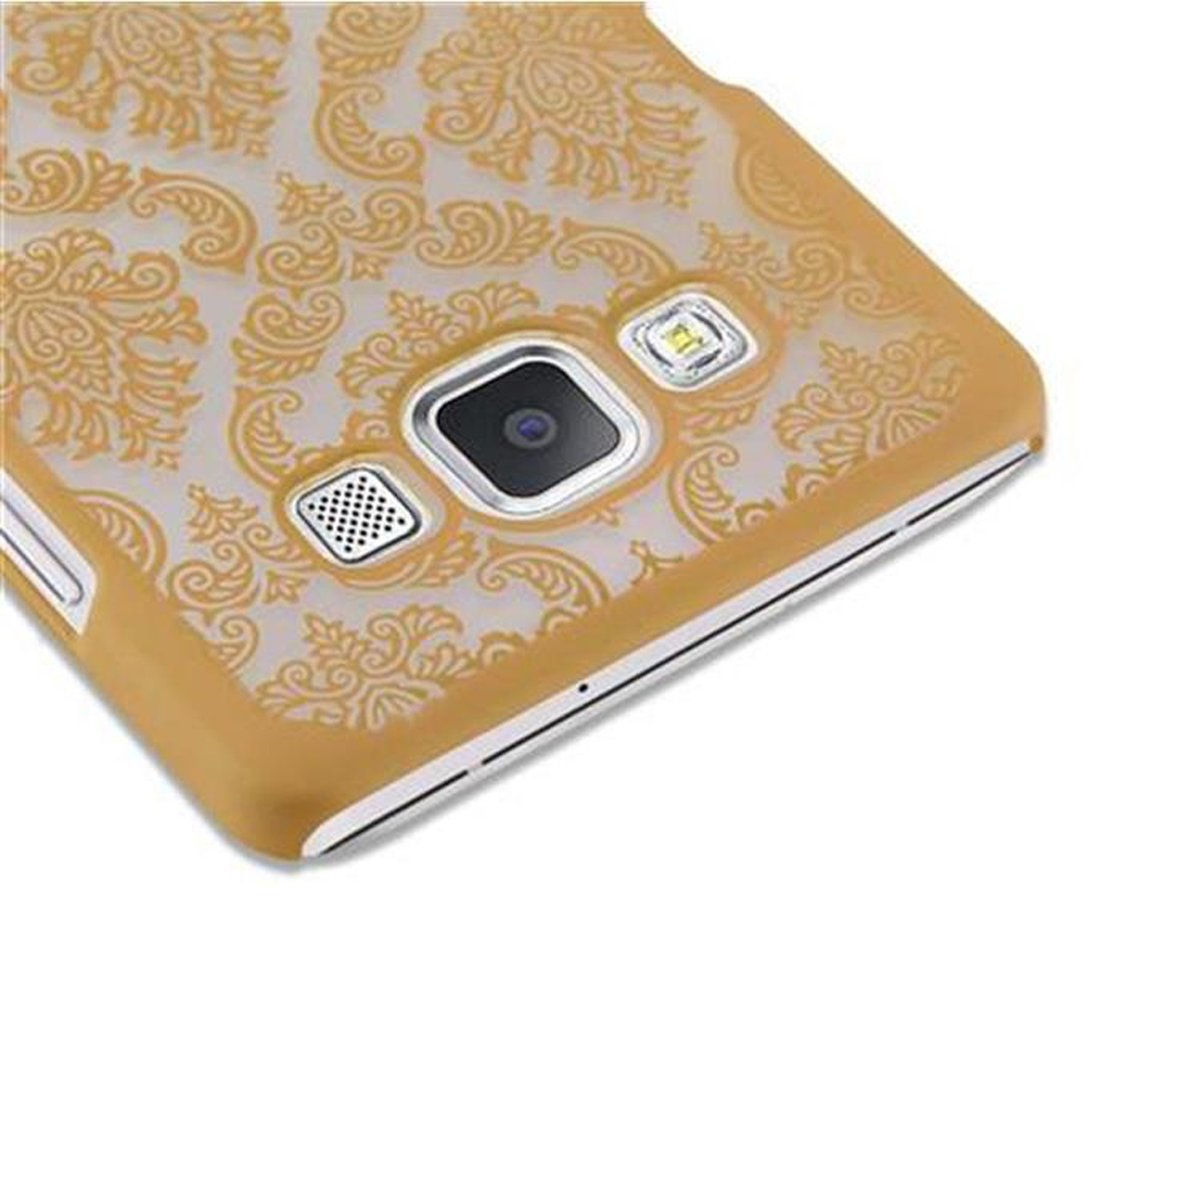 Hülle Samsung, Backcover, Case Paisley in CADORABO A5 Galaxy Design, Henna GOLD Hard 2015, Blumen